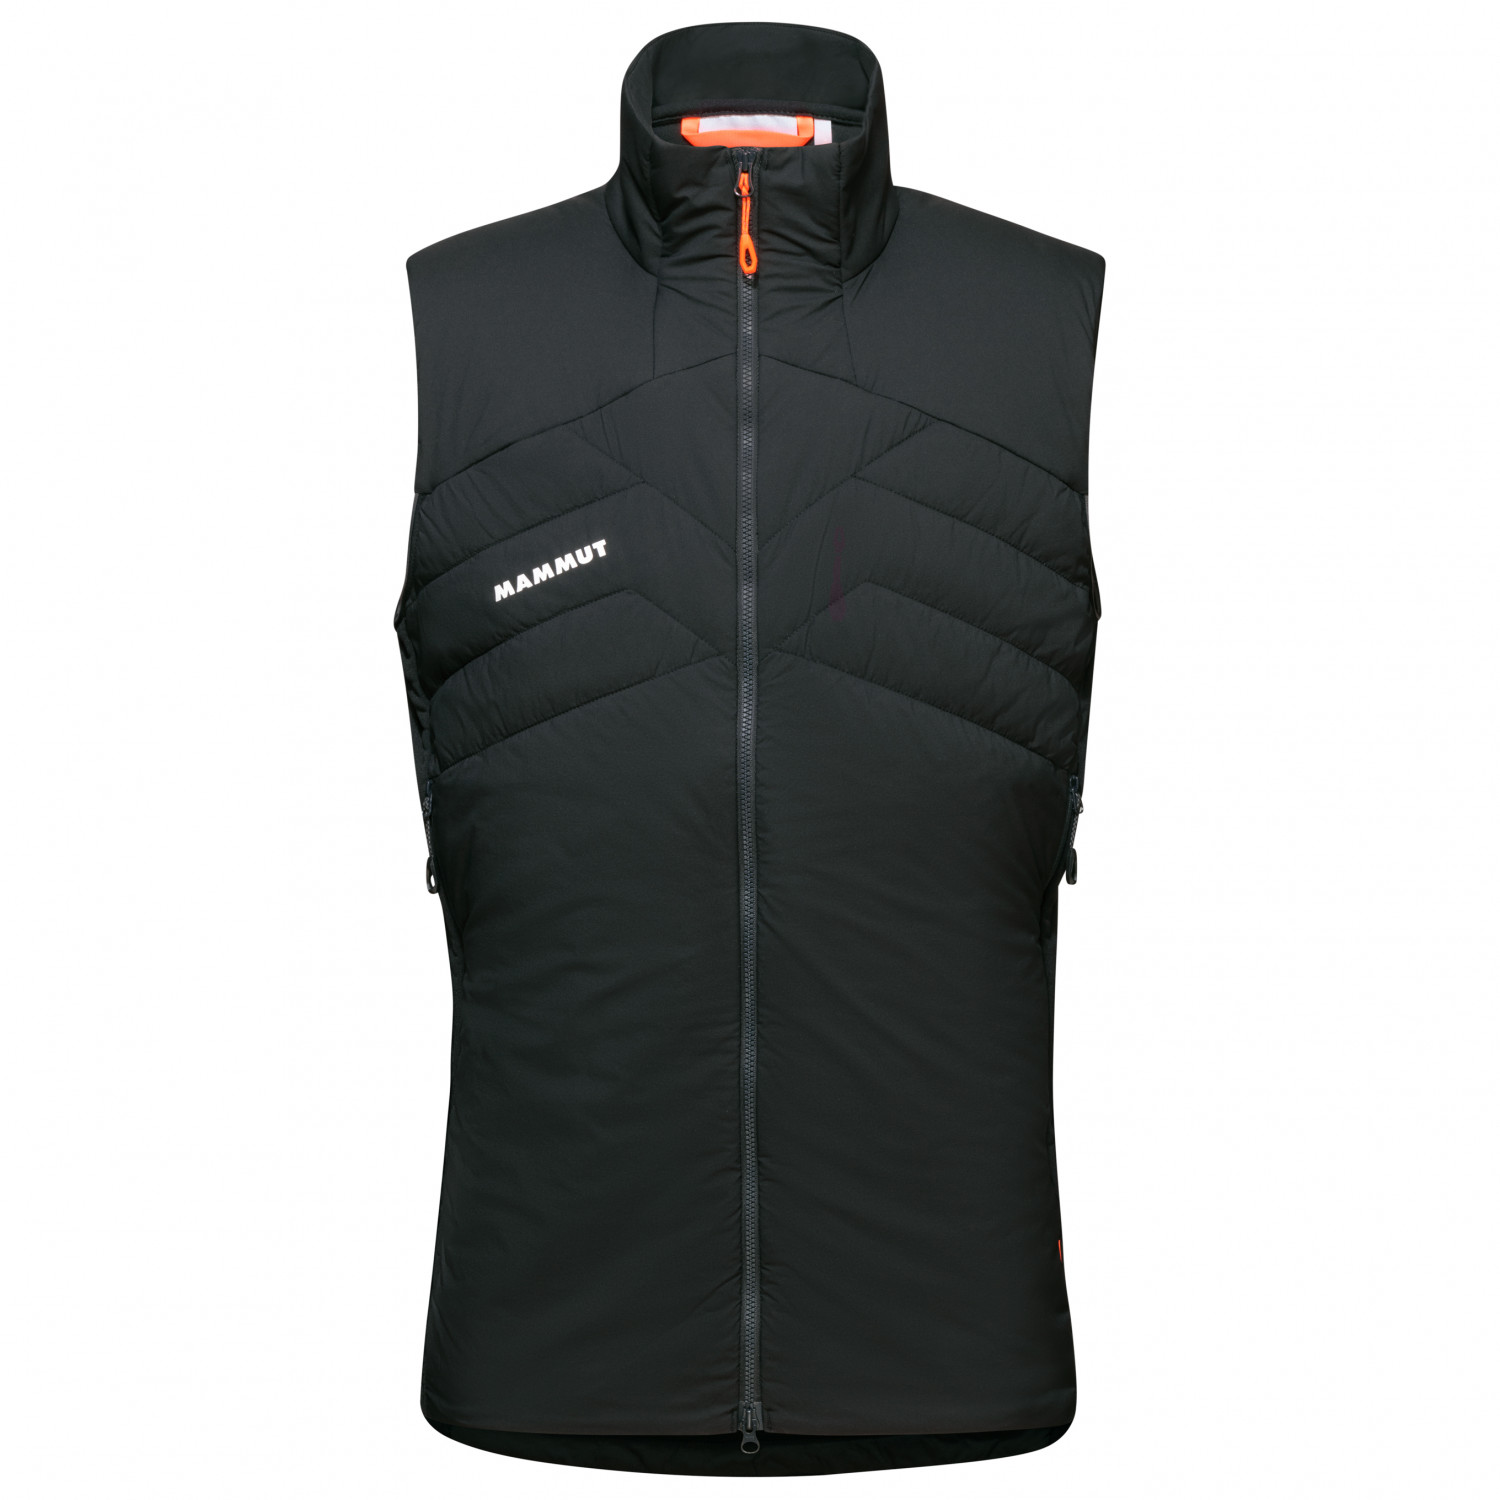 Жилет из синтетического волокна Mammut Rime Light Insulated Flex Vest, цвет Black/Phantom top vest black size l